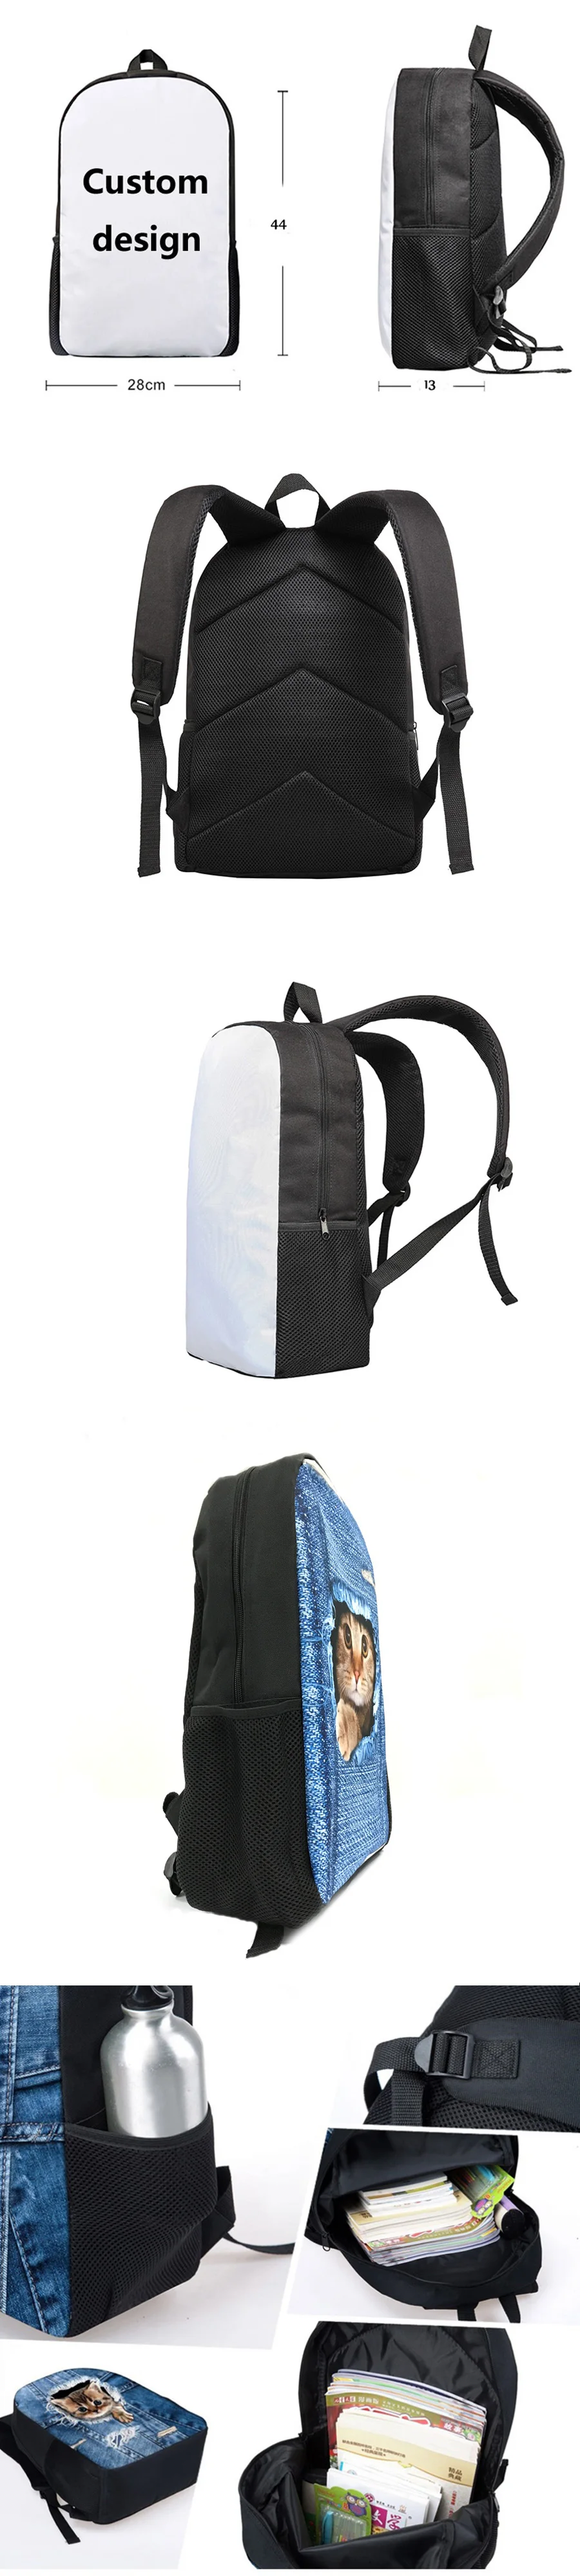 FORUDESIGNS/детские школьные ранцы для мальчиков, спортивный школьный рюкзак с рисунком для ног, Детский рюкзак, Mochila Escolar набор